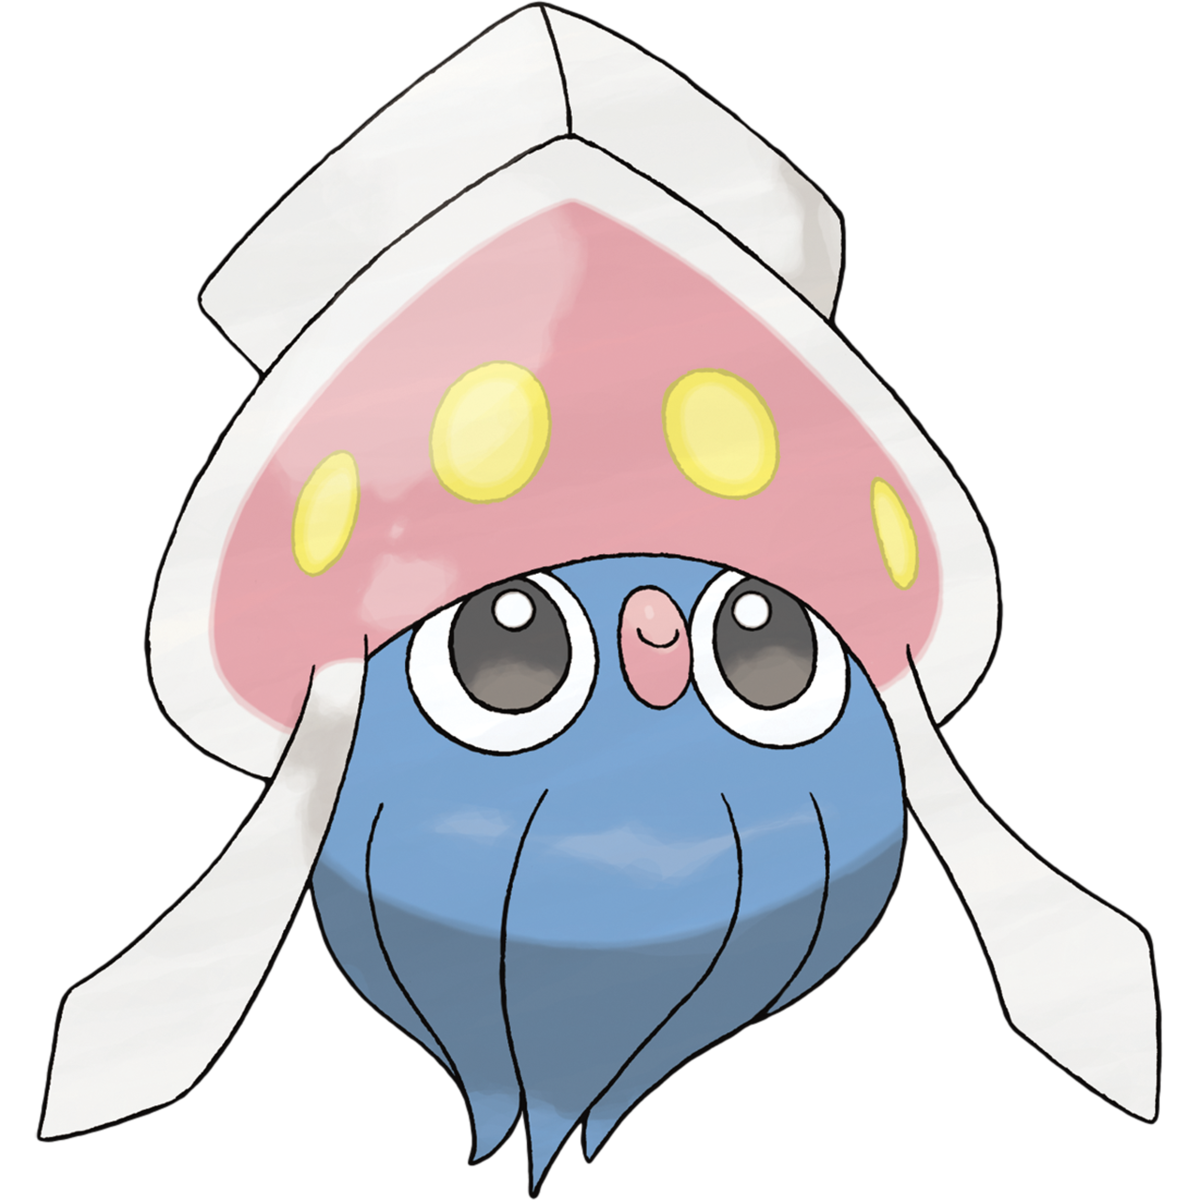 Squid cuttlefish